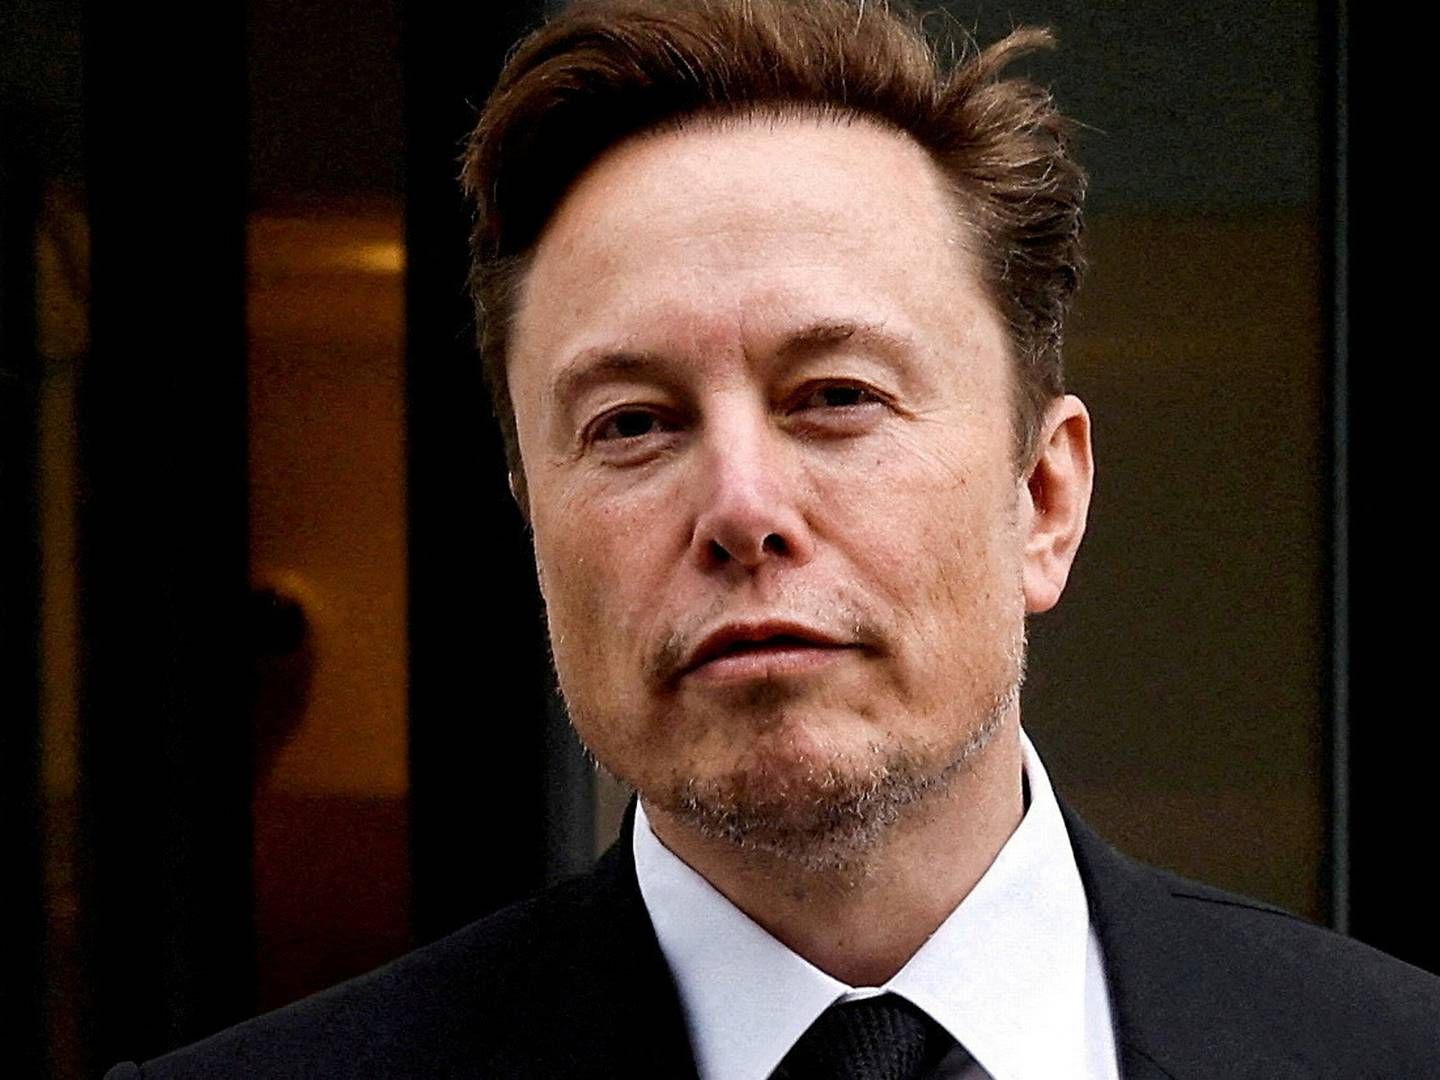 Det sociale medie Twitter ser svindende indtægter under Elon Musks ejerskab. | Foto: Jonathan Ernst/Reuters/Ritzau Scanpix